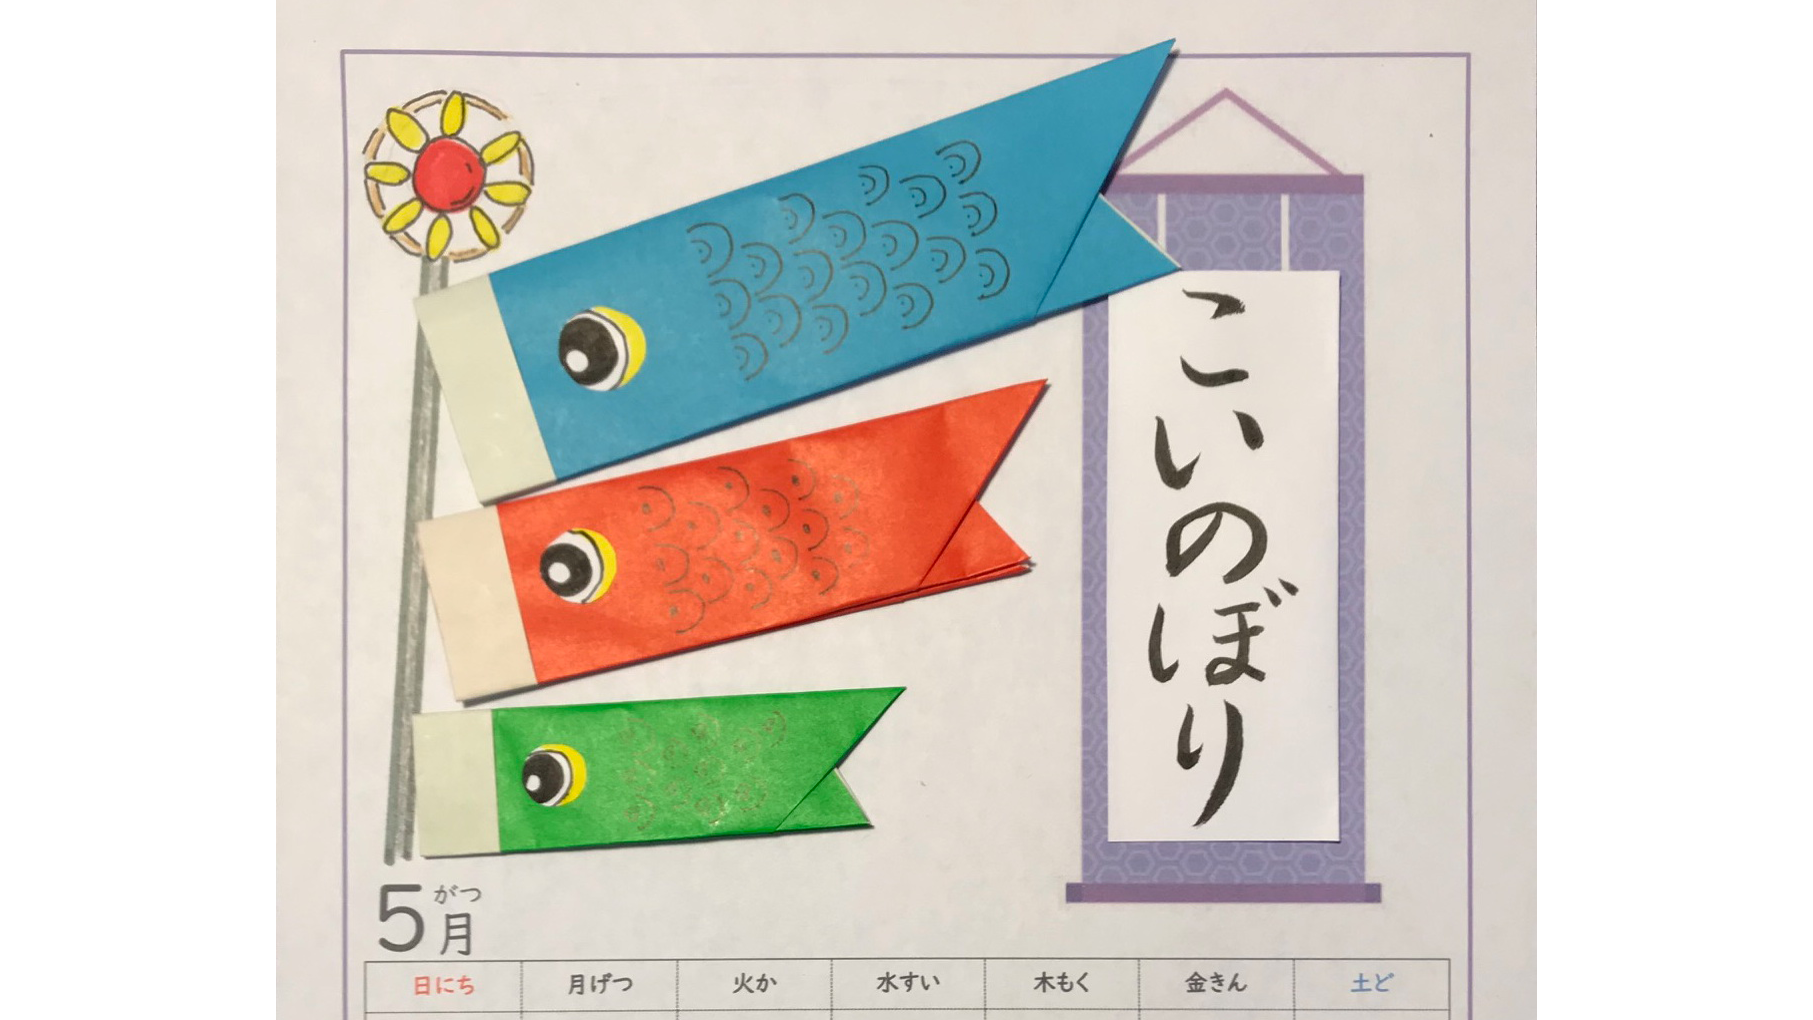 こいのぼり折り紙 シカモア日本語教室